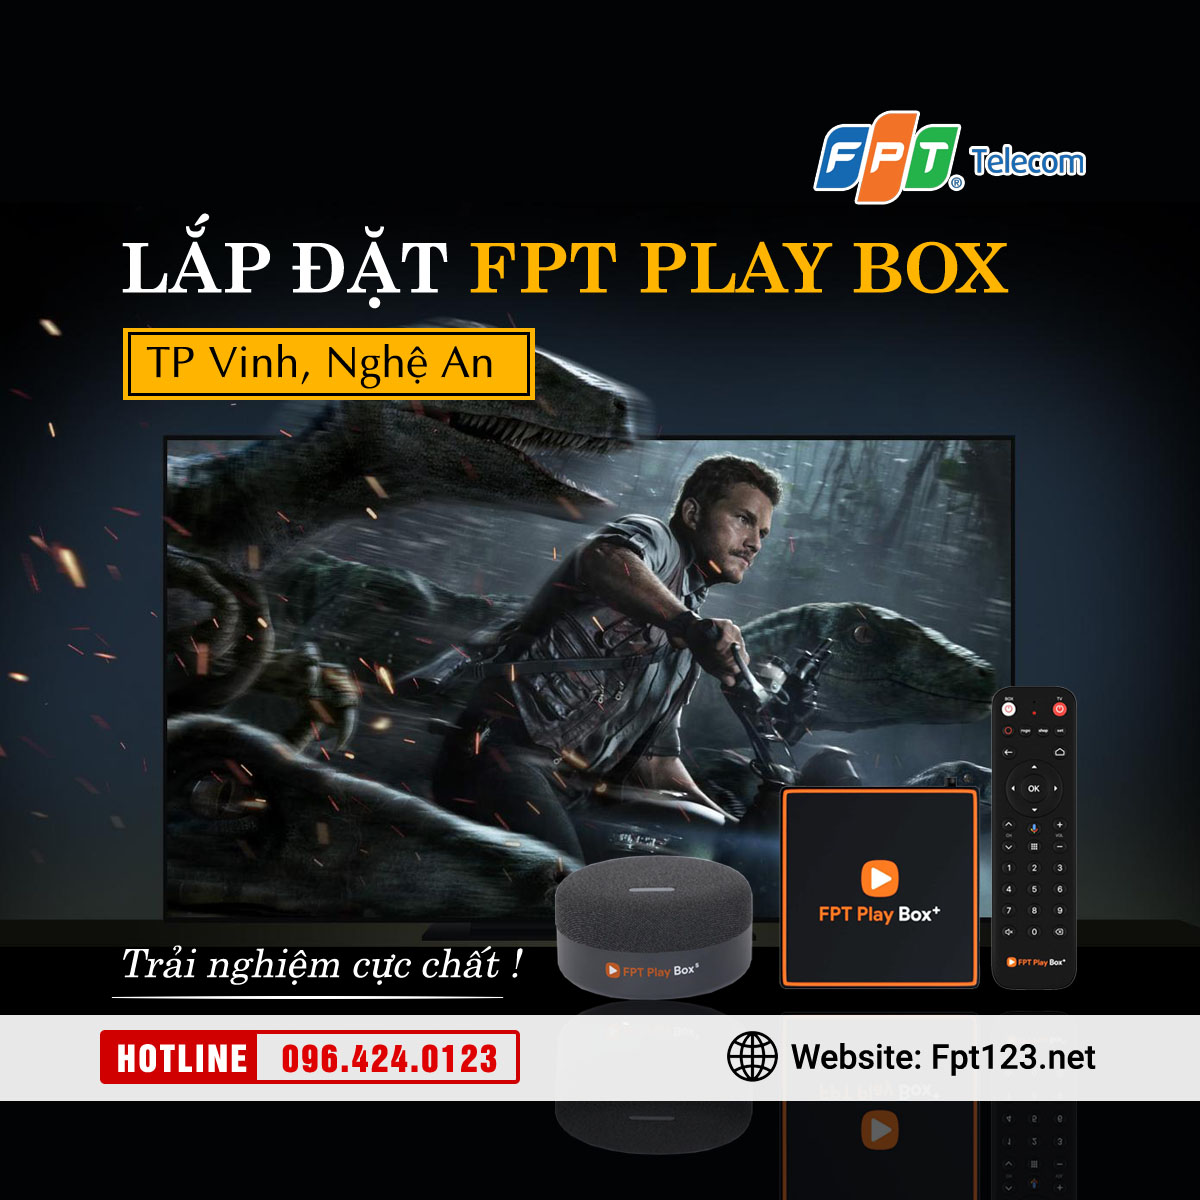 Lắp đặt FPT Play Box tại TP Vinh, Nghệ An